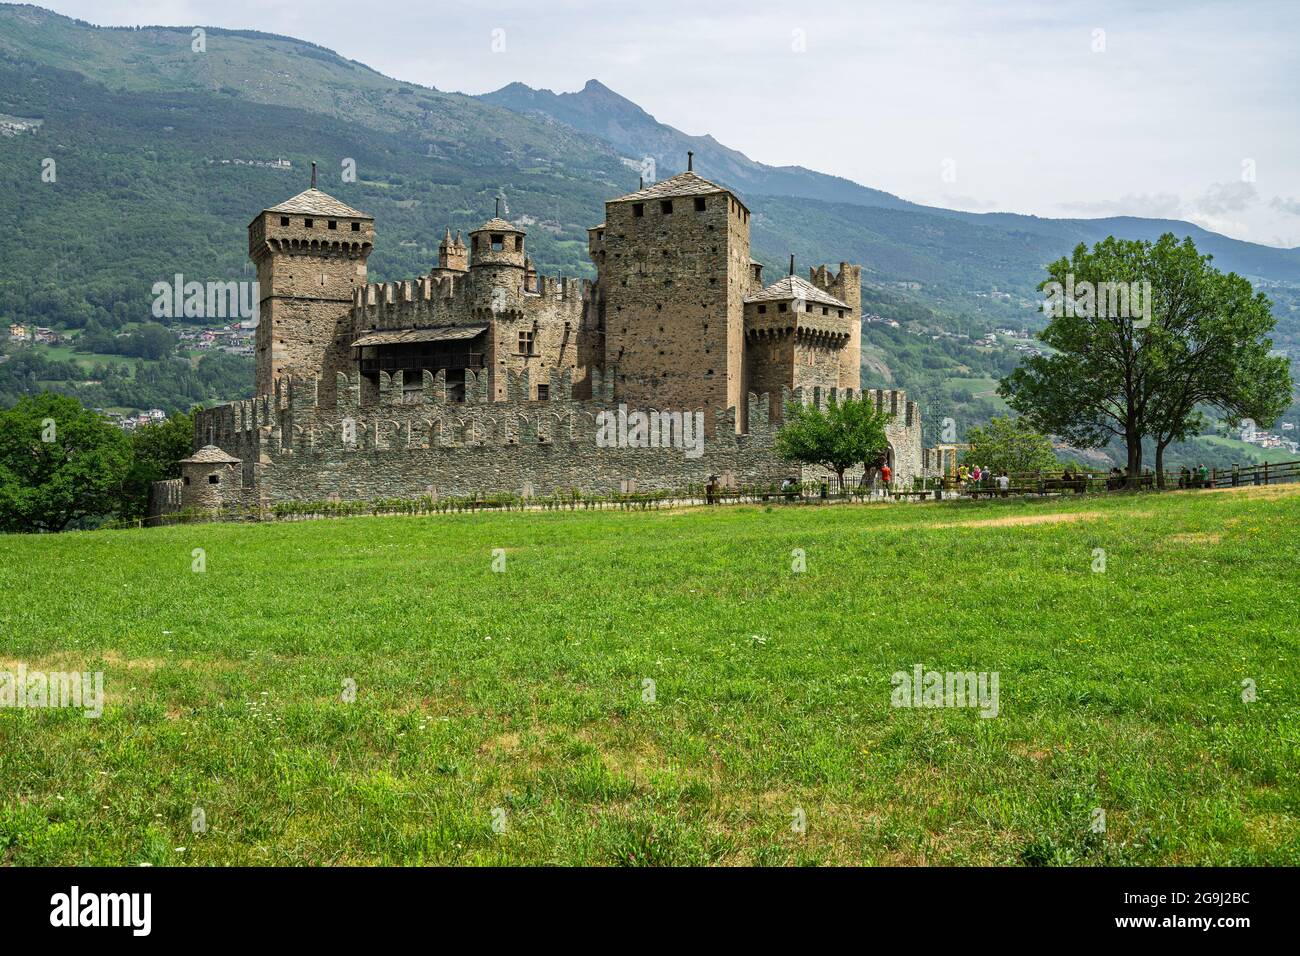 Vista sul Castello di Fenis, un famoso castello medievale in Valle d'Aosta e una delle principali attrazioni turistiche della regione Foto Stock